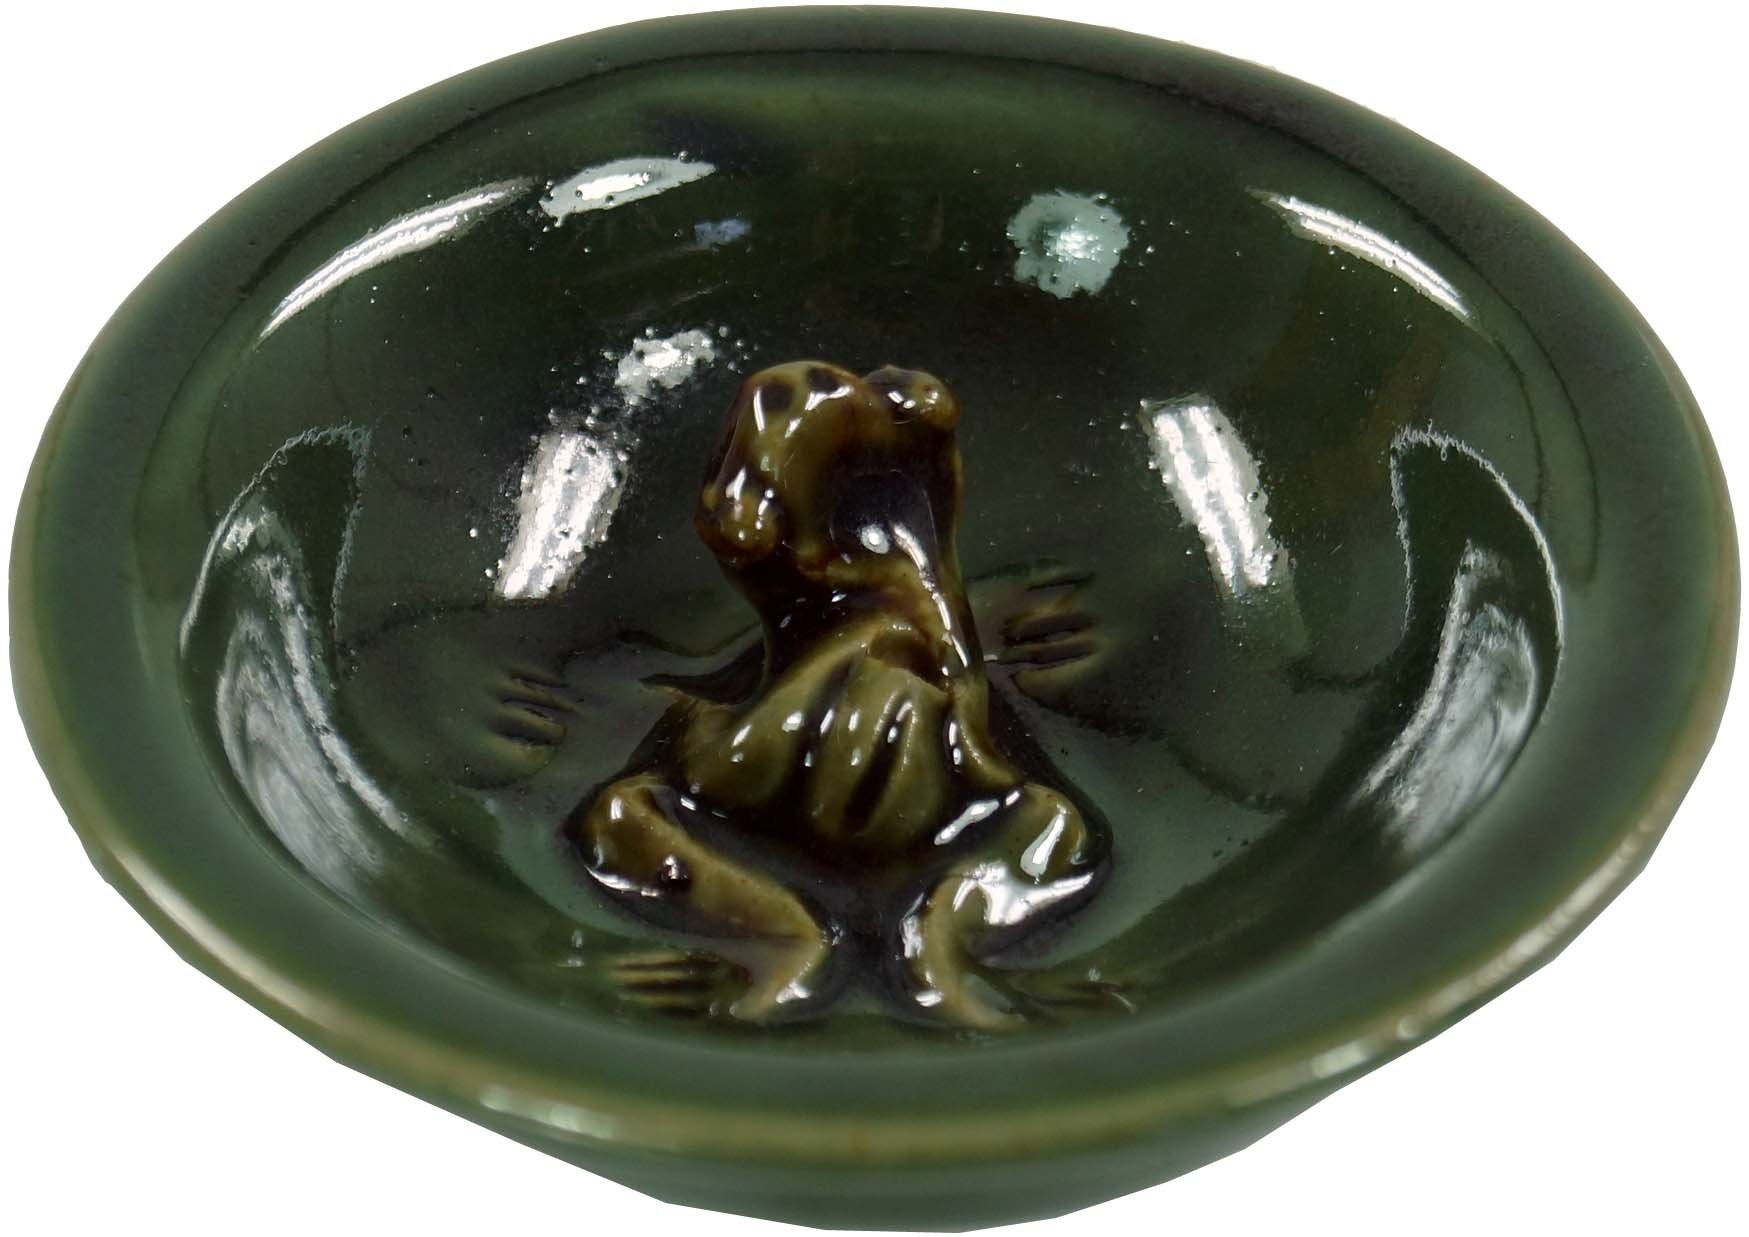 GURU SHOP Keramik Räucherstäbchen Schale, Grün, Farbe: Grün, 3x7,5x7,5 cm, Räucherstäbchen Halter